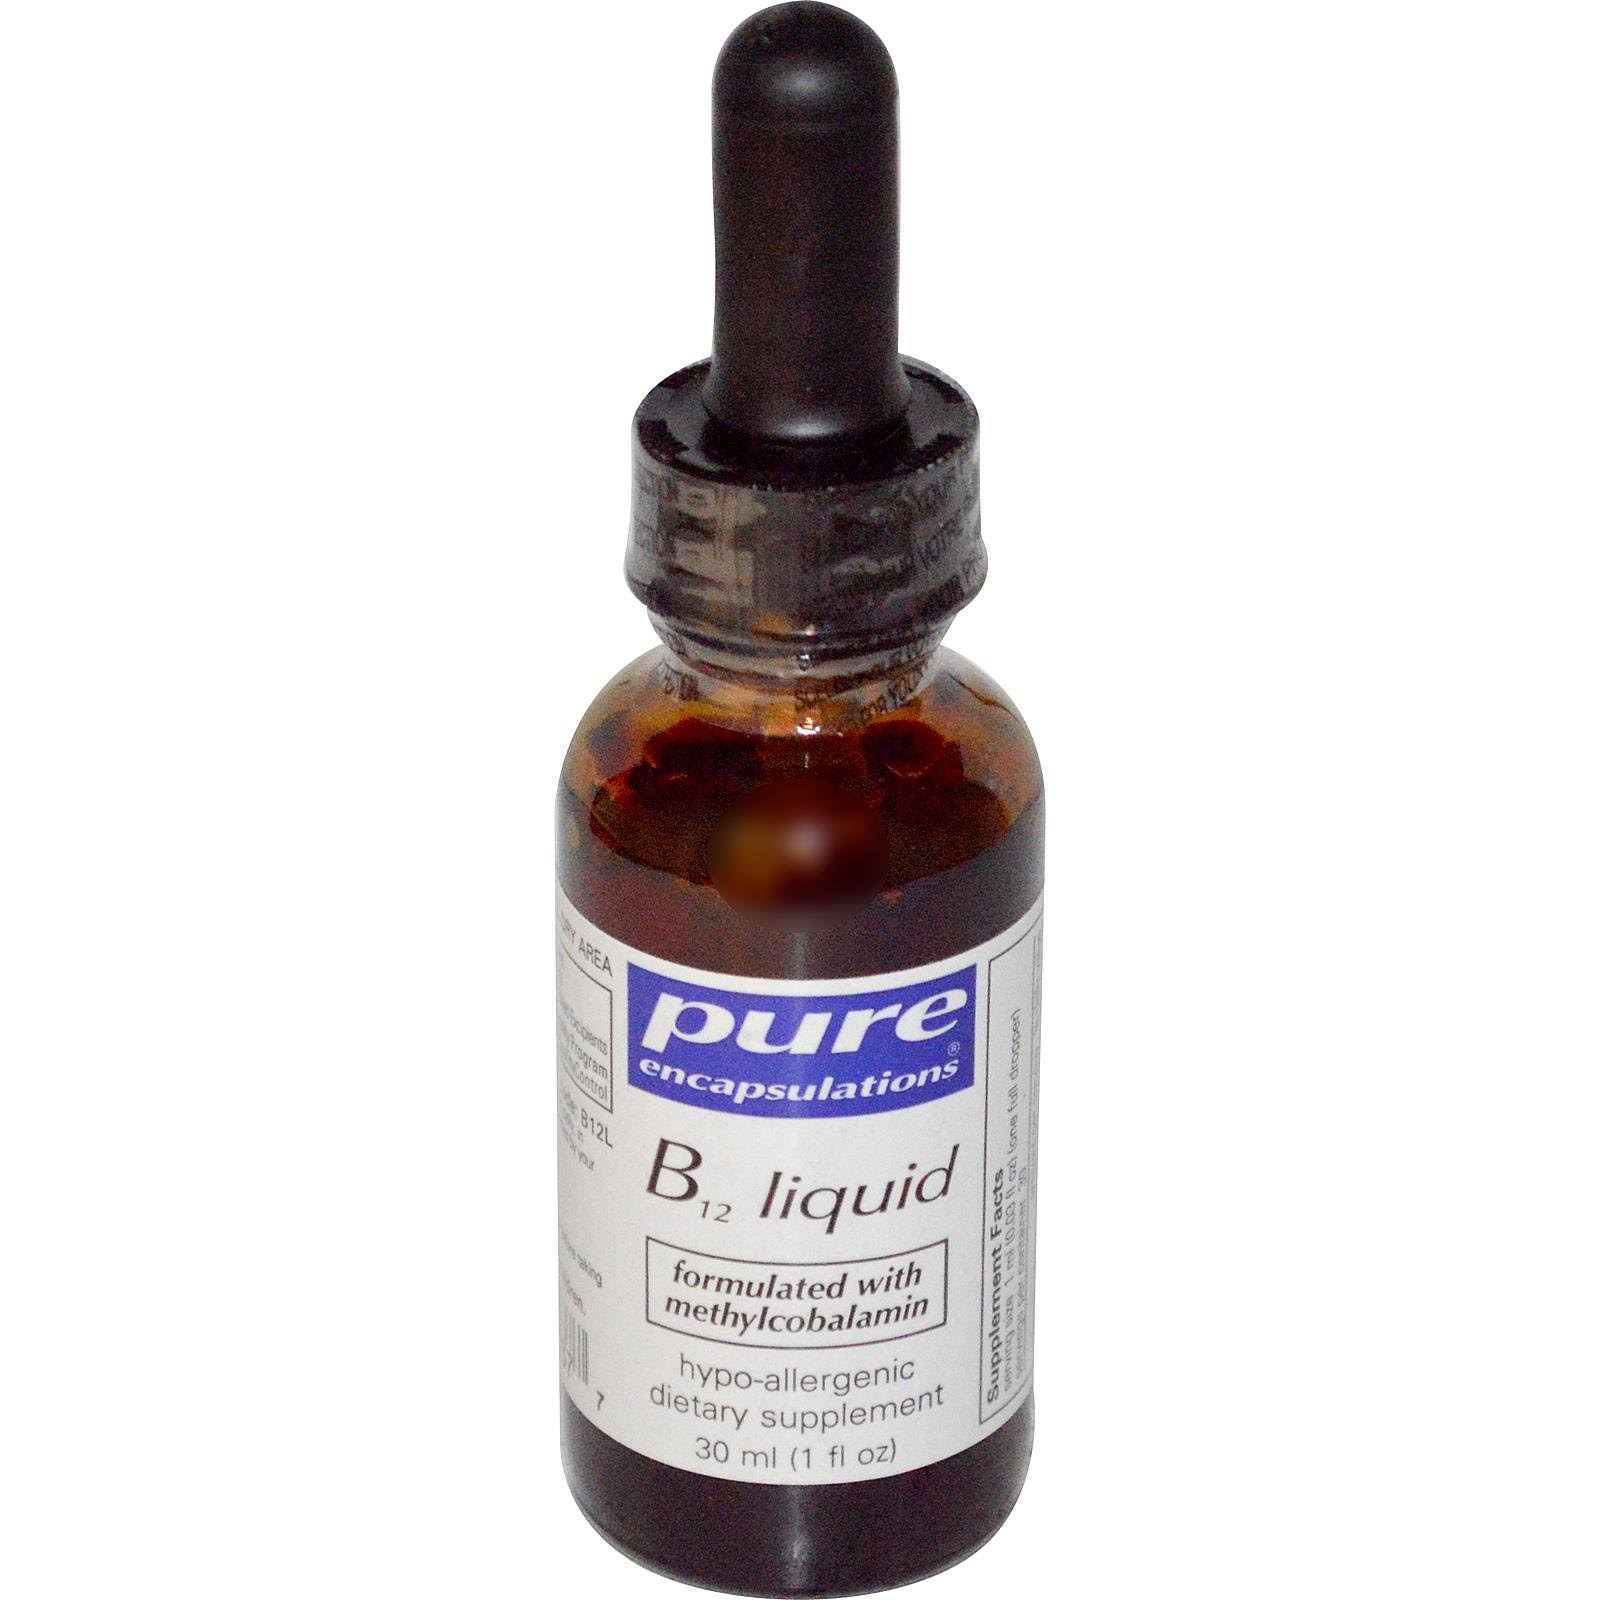 Pure Encapsulations B12 Liquid Supplement - 30ml